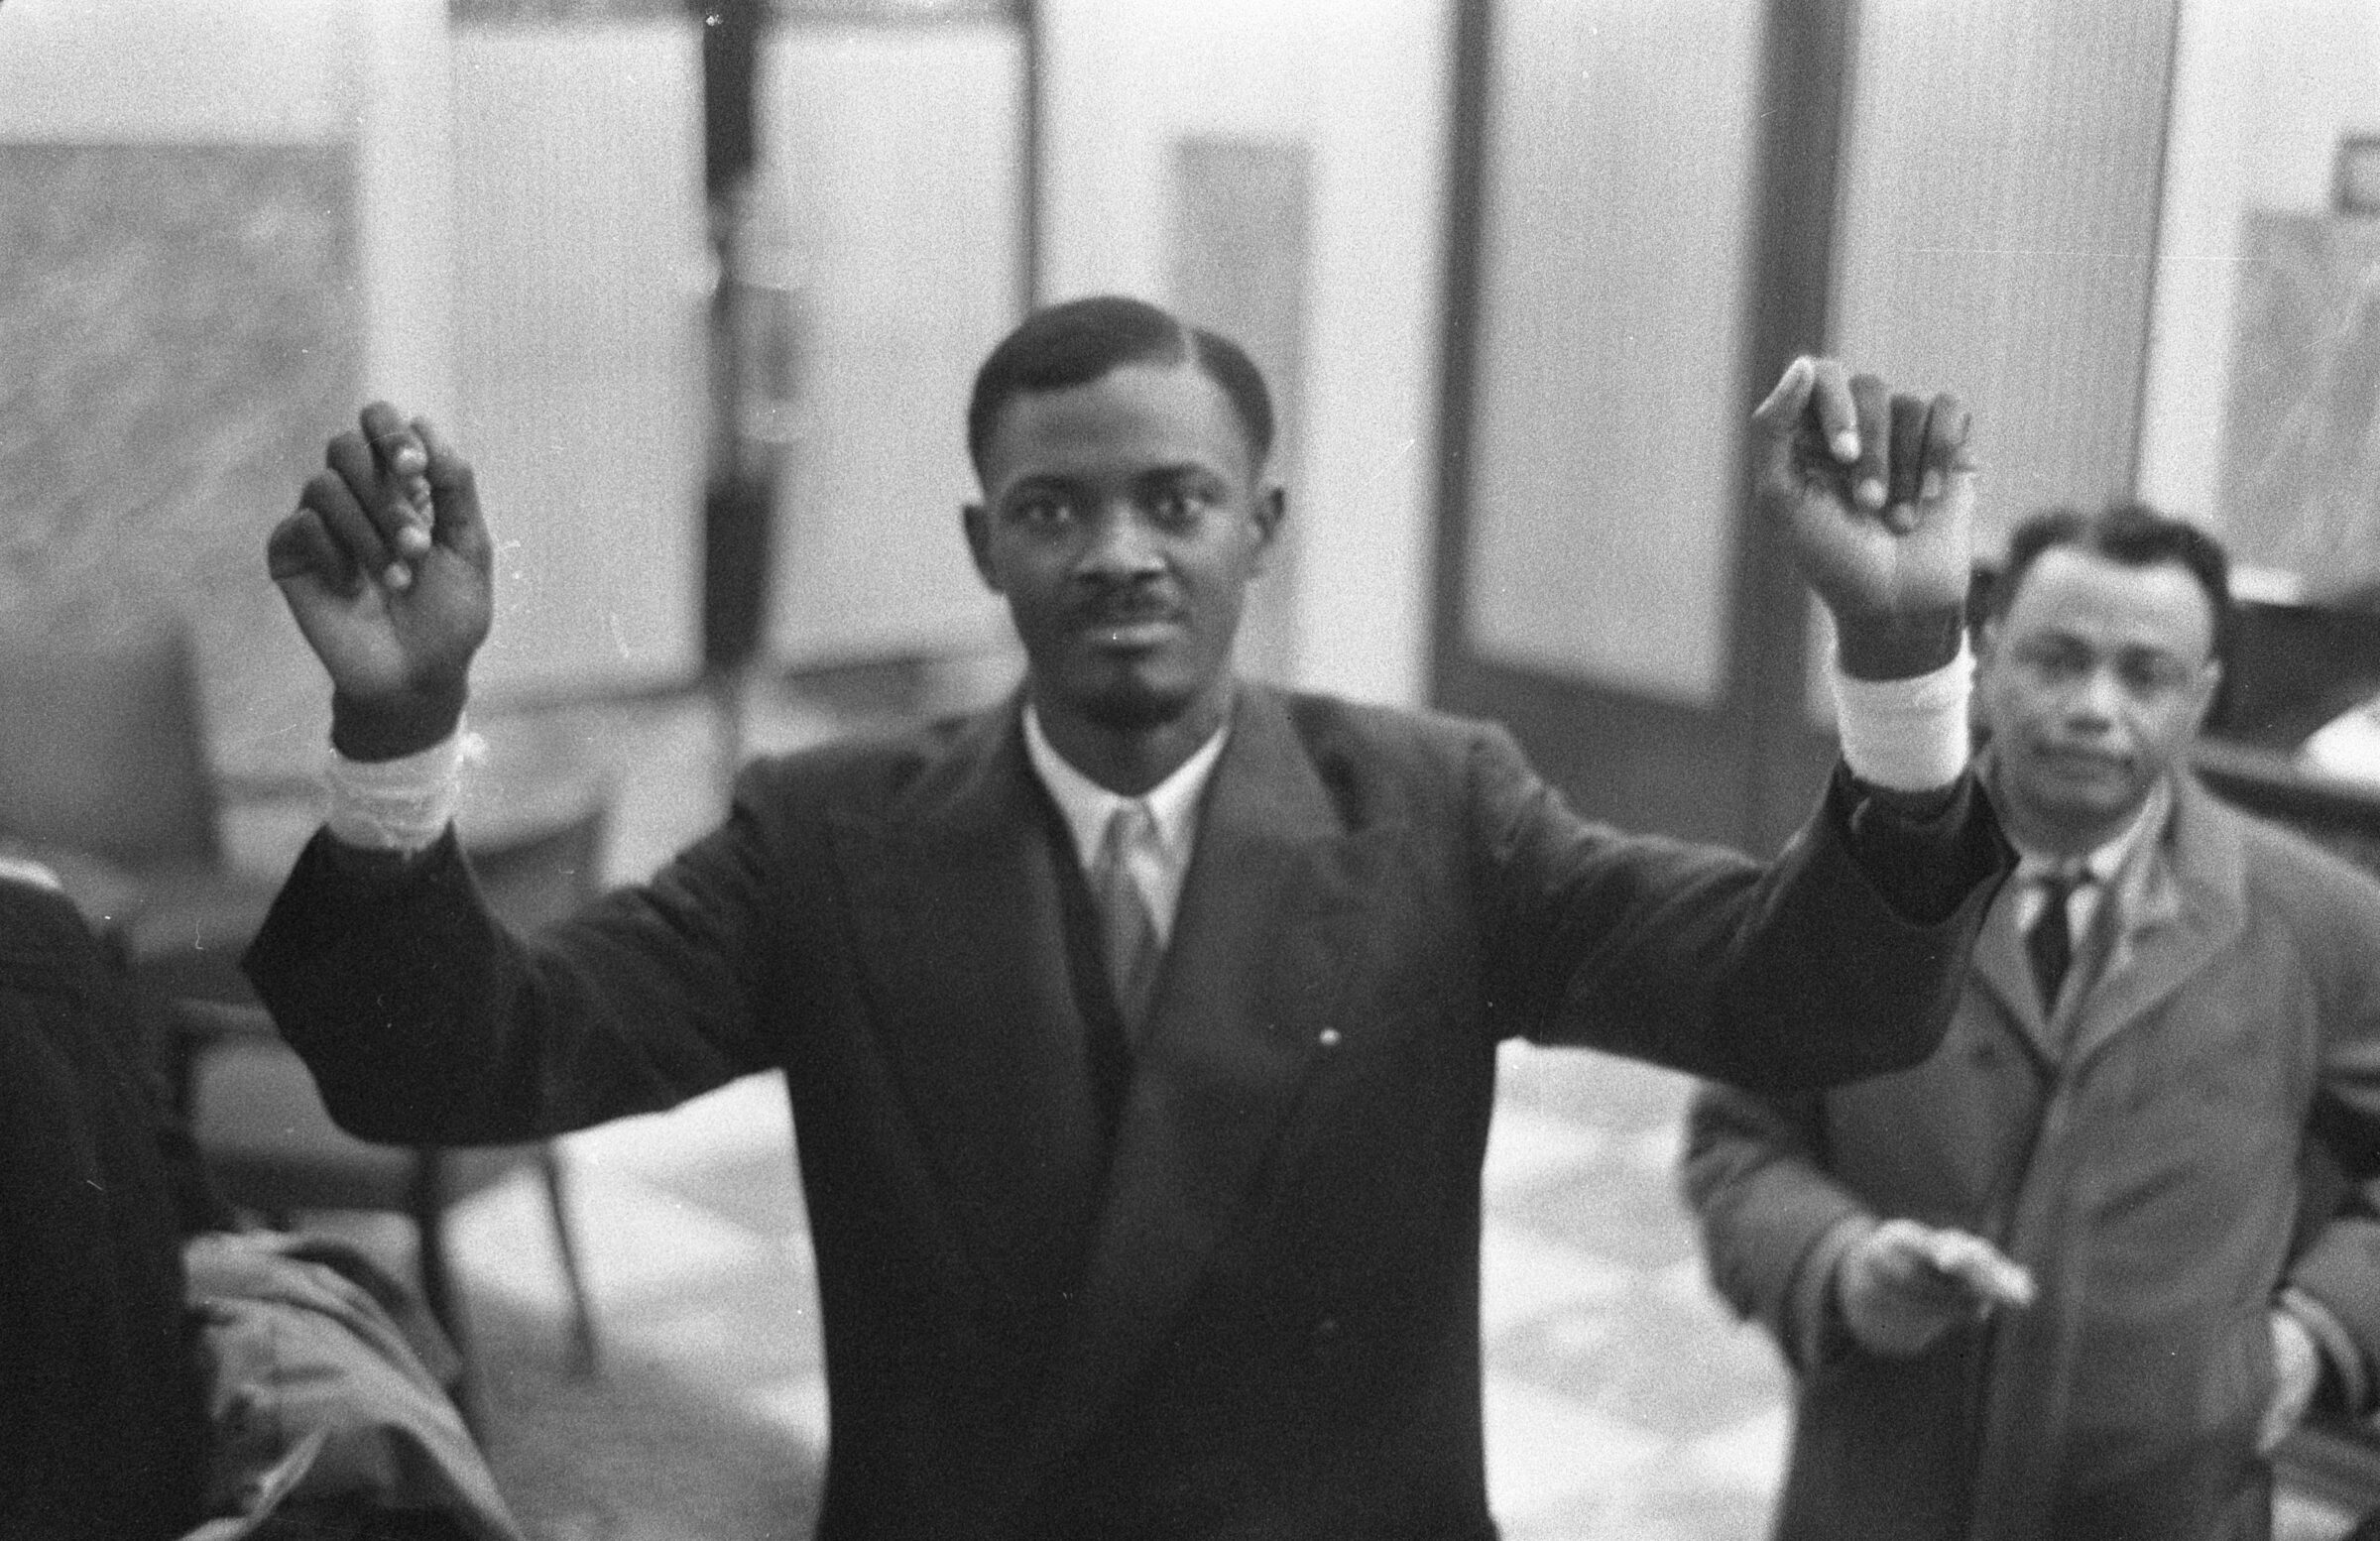 Il y a juste soixante ans, Patrice Lumumba et ses deux compagnons étaient assassinés par des hommes de main de la Belgique coloniale. Henri Goldman témoigne ici de la place particulière que le leader congolais occupe dans son panthéon personnel (en libre lecture dans l'Asymptomatique).